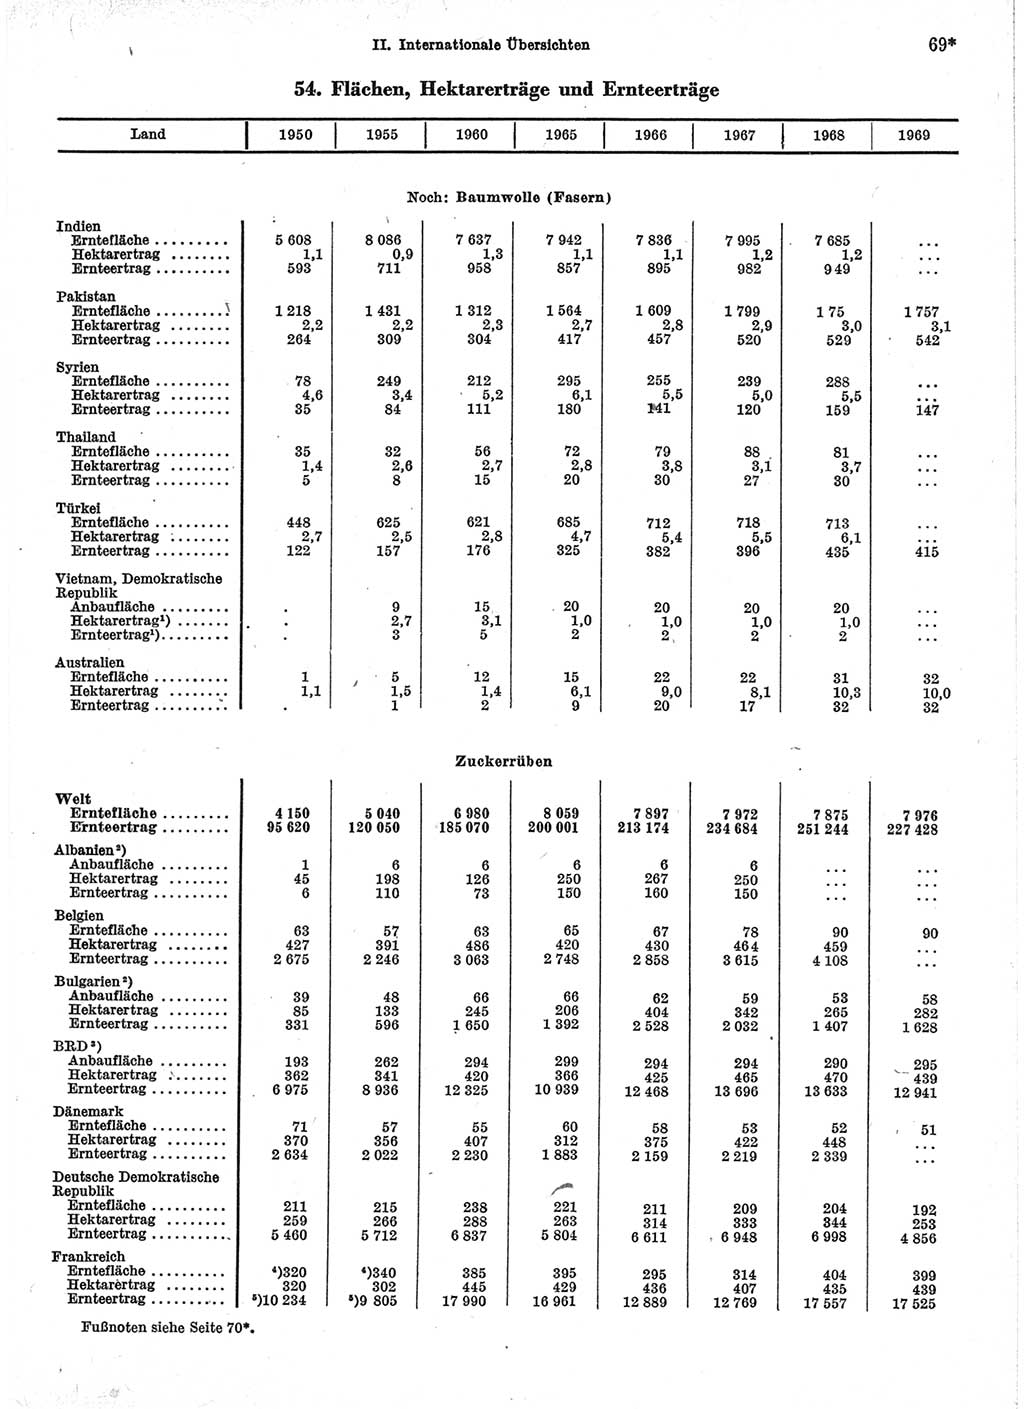 Statistisches Jahrbuch der Deutschen Demokratischen Republik (DDR) 1971, Seite 69 (Stat. Jb. DDR 1971, S. 69)